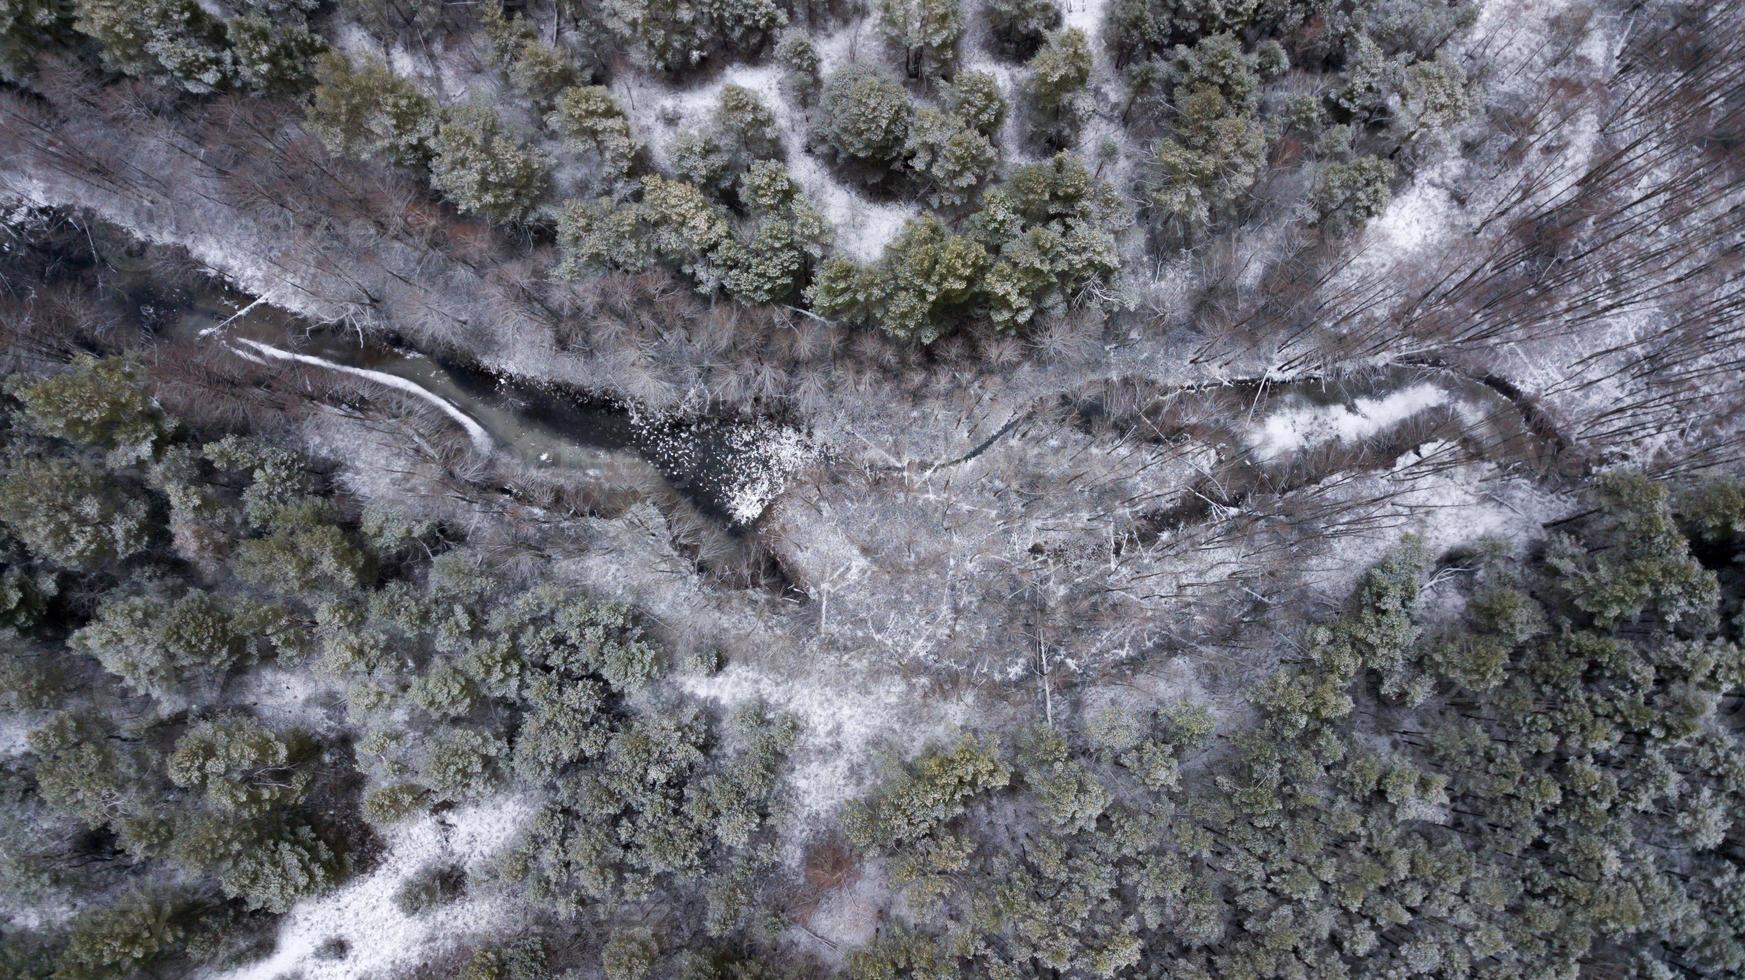 lago congelado na floresta de inverno. fotografia aérea com quadcopter foto